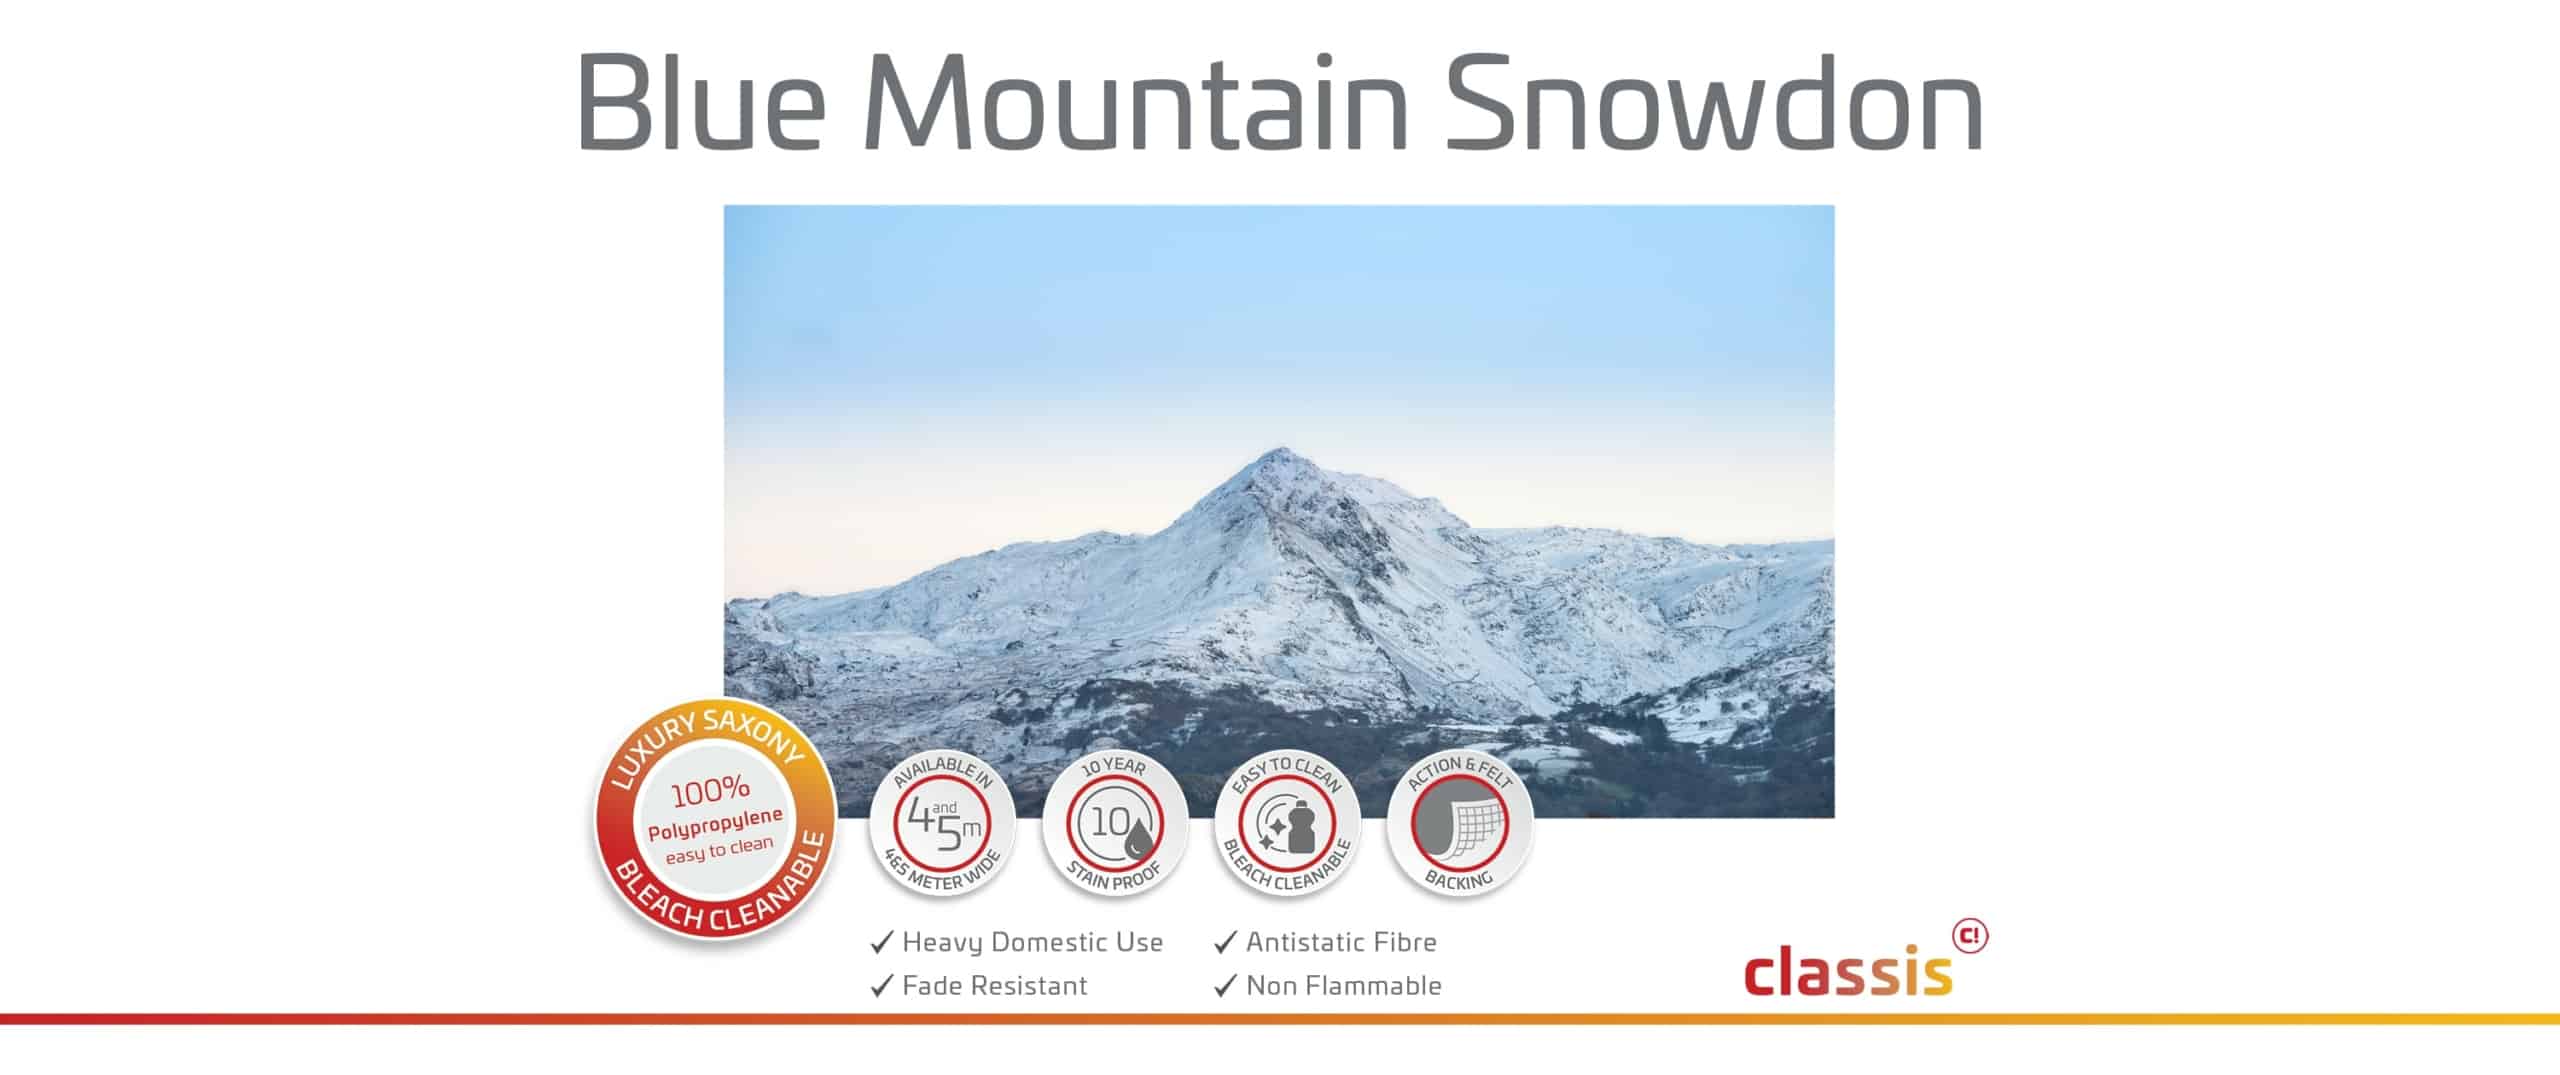 Blauer Berg Snowdon Website 3000x1260px